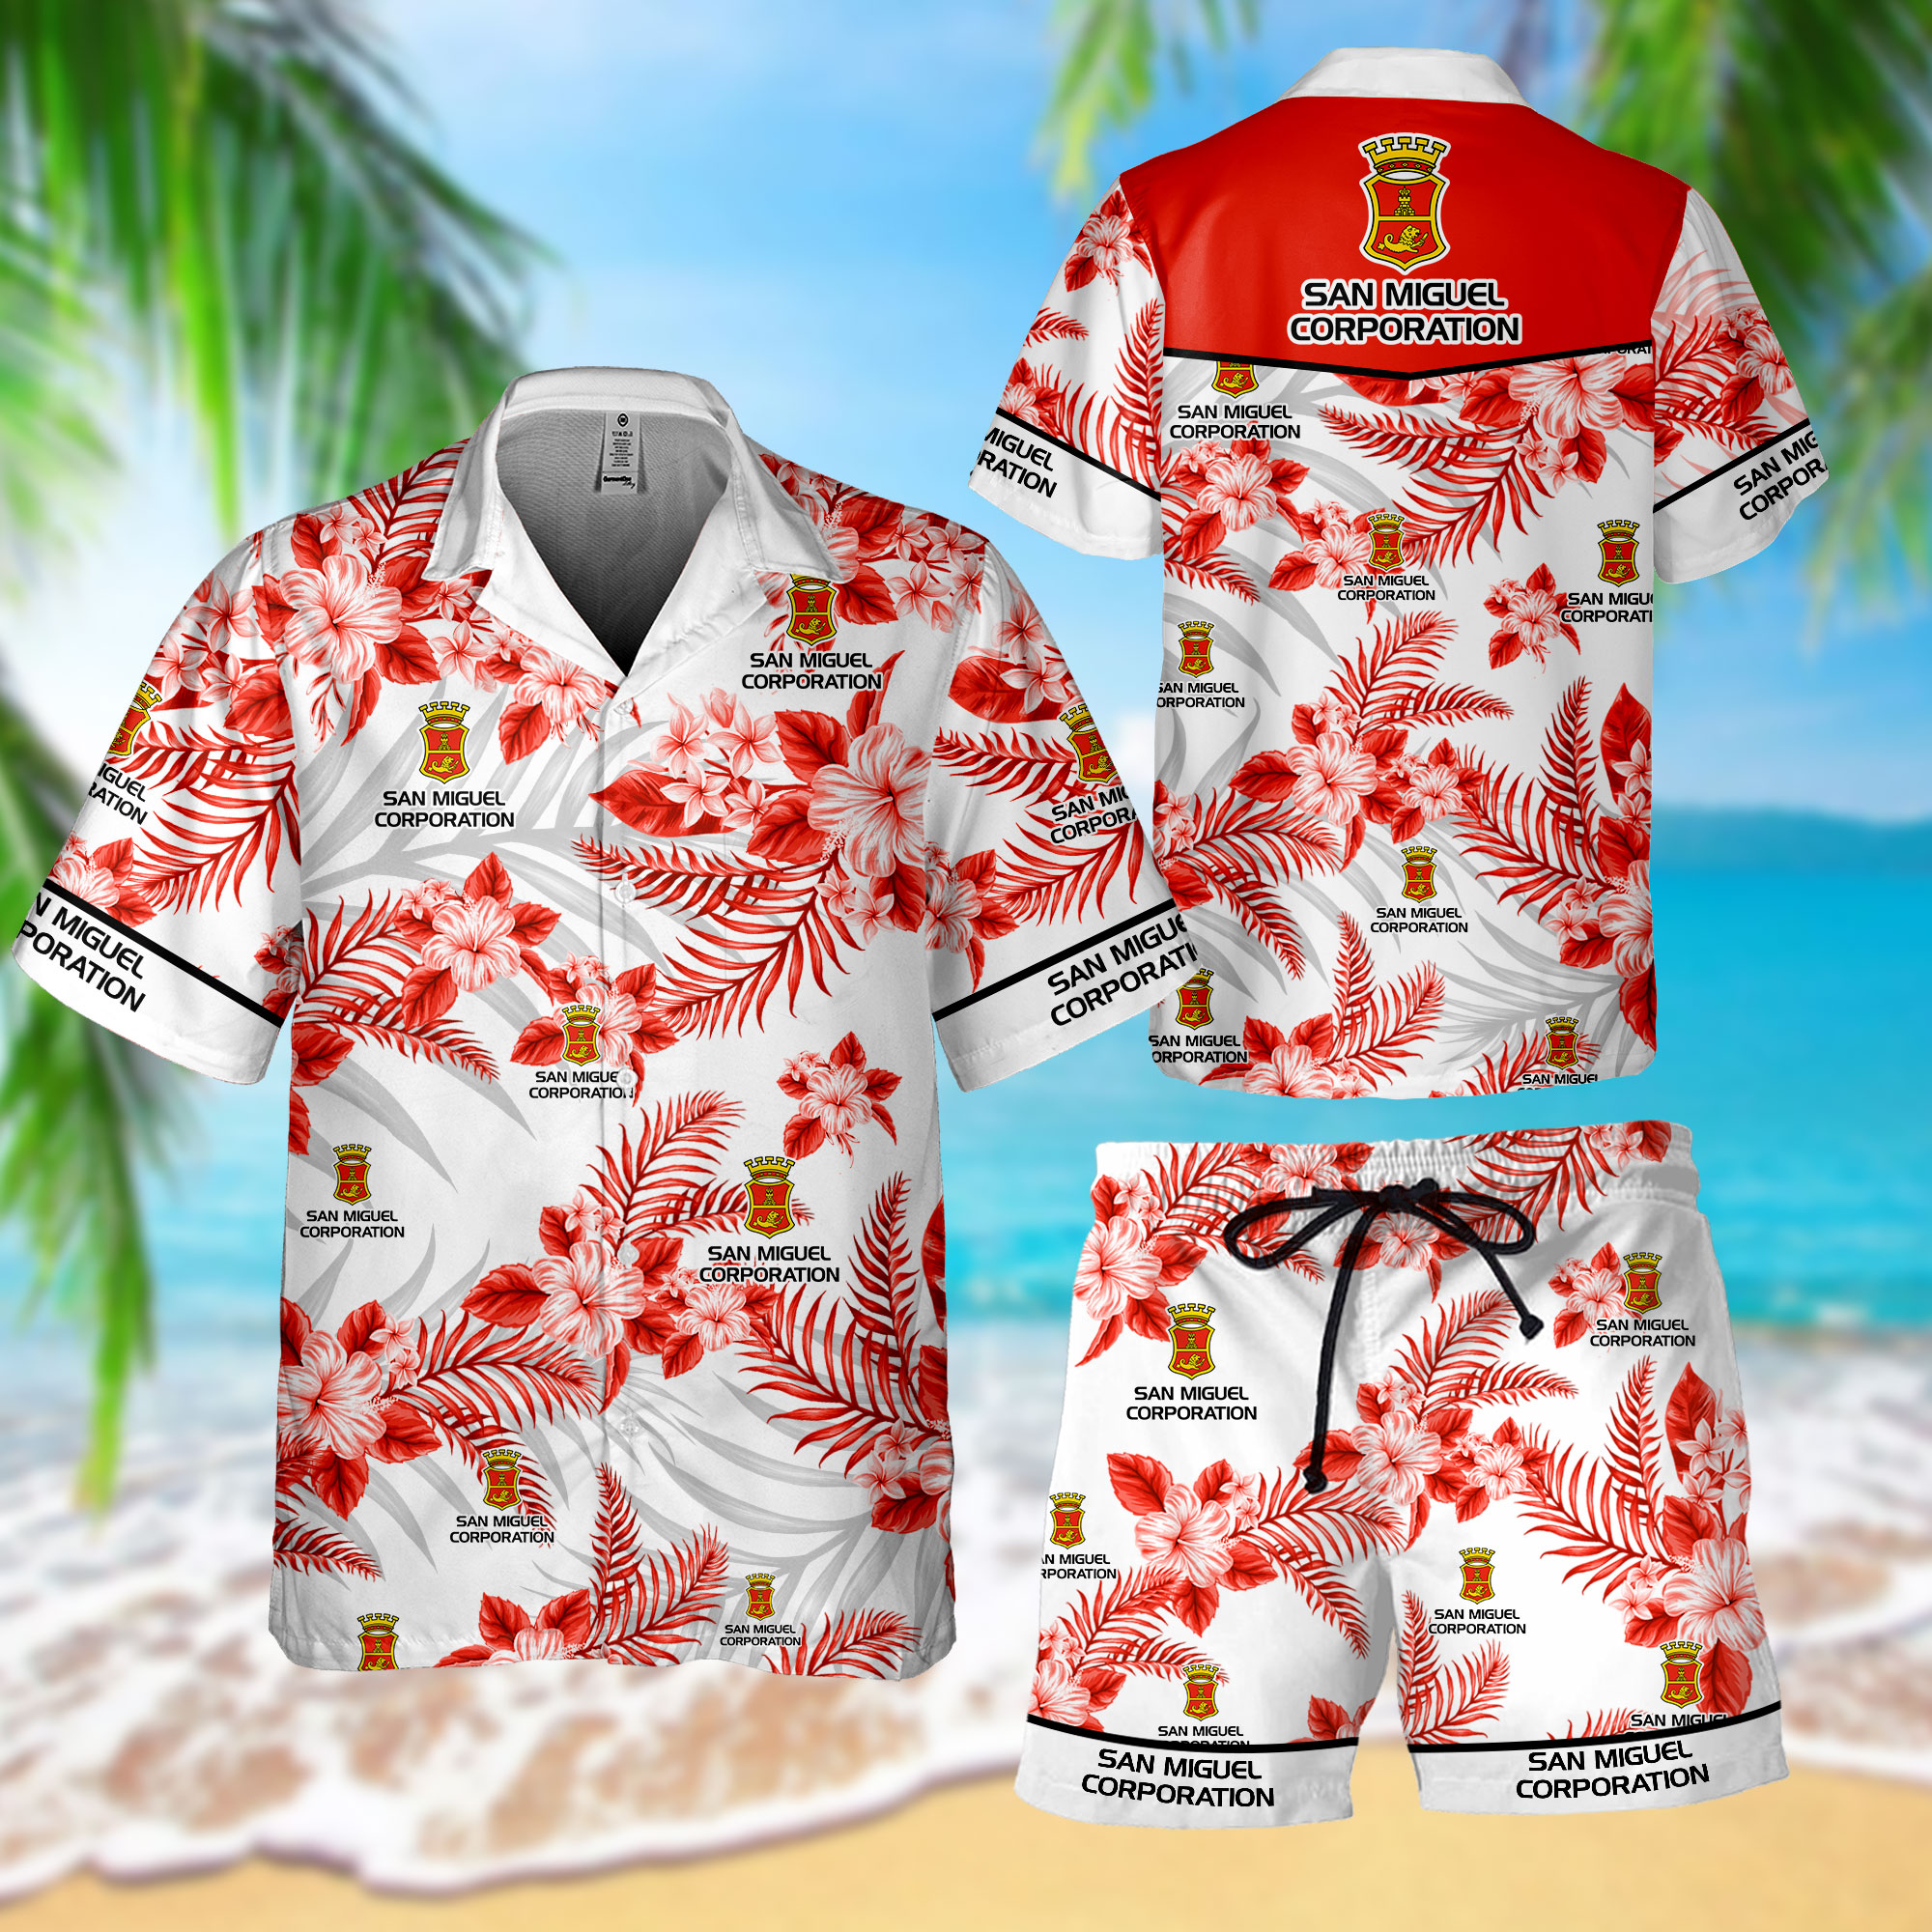 NEW San Miguel Corporation Hawaii Shirt, Shorts